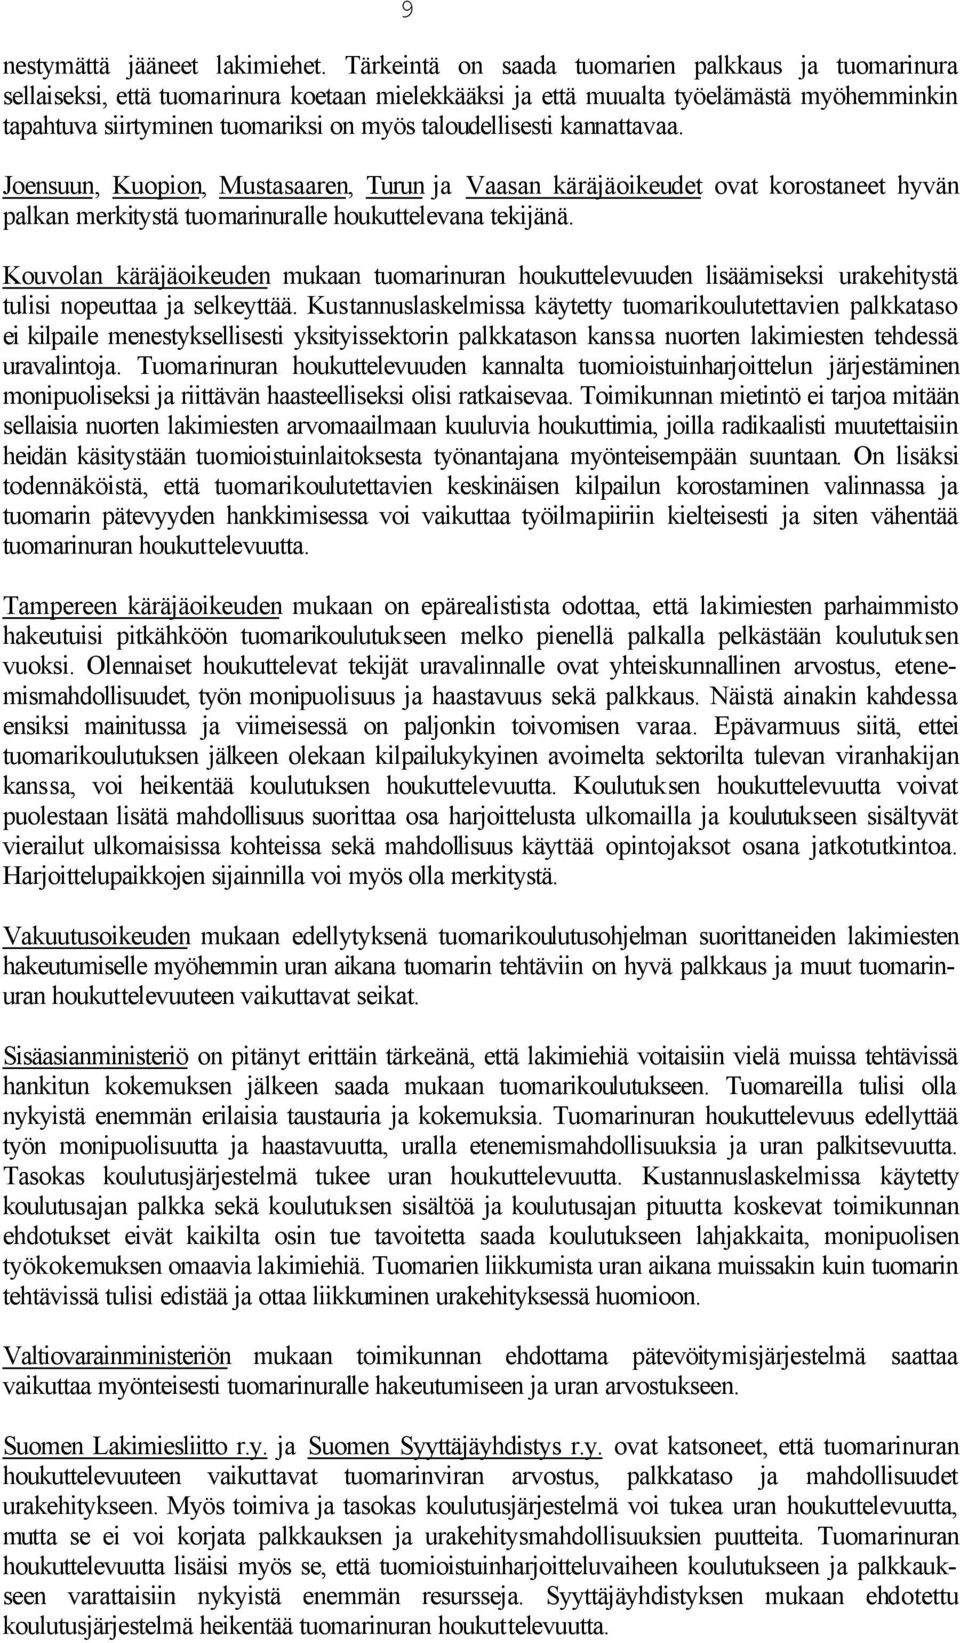 taloudellisesti kannattavaa. Joensuun, Kuopion, Mustasaaren, Turun ja Vaasan käräjäoikeudet ovat korostaneet hyvän palkan merkitystä tuomarinuralle houkuttelevana tekijänä.